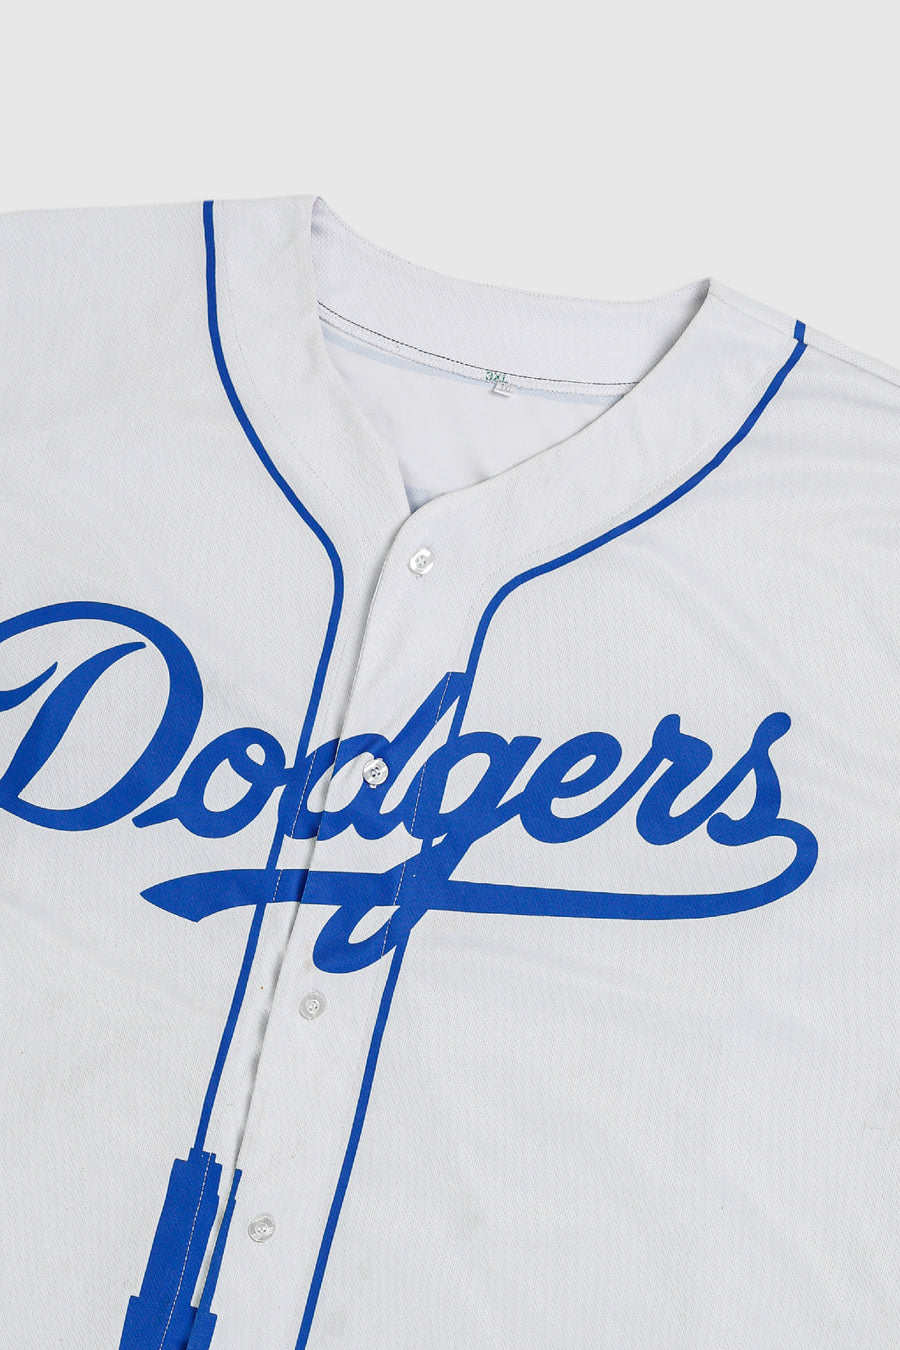 Vintage Dodgers jersey